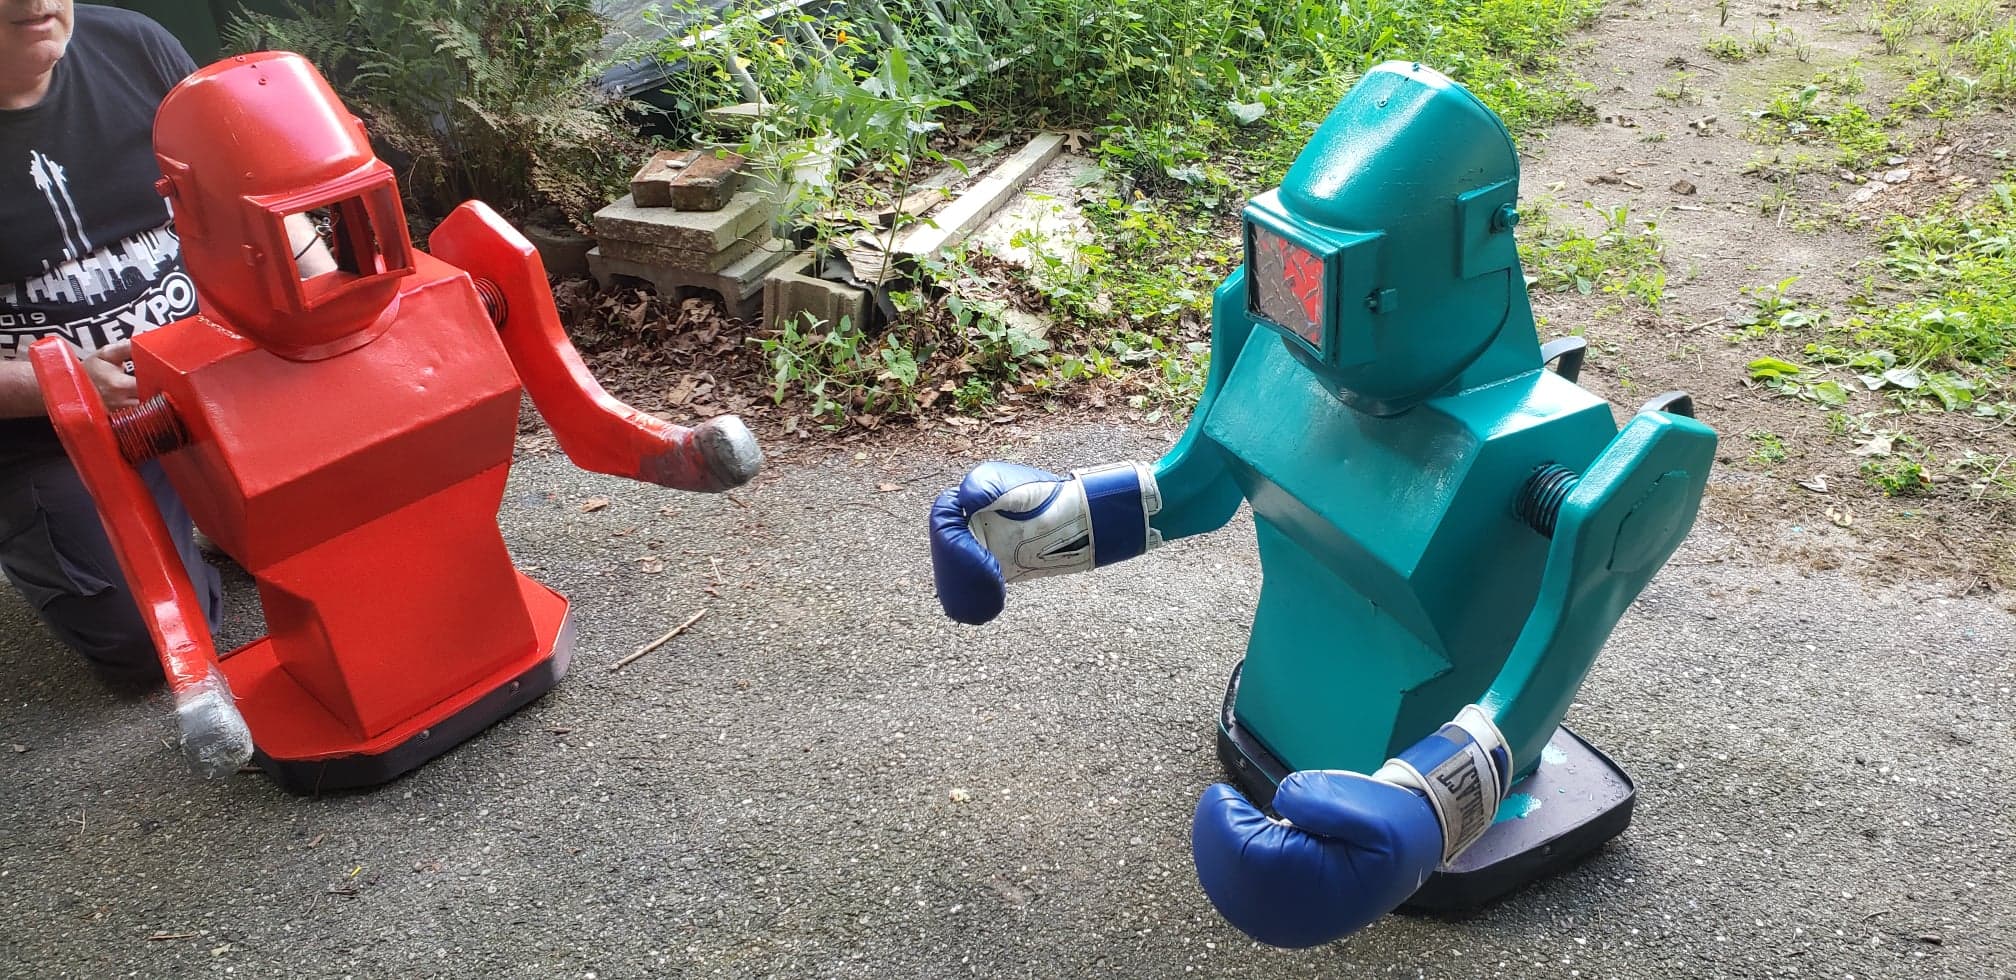 Life Size Rock-em Sock-em Robots